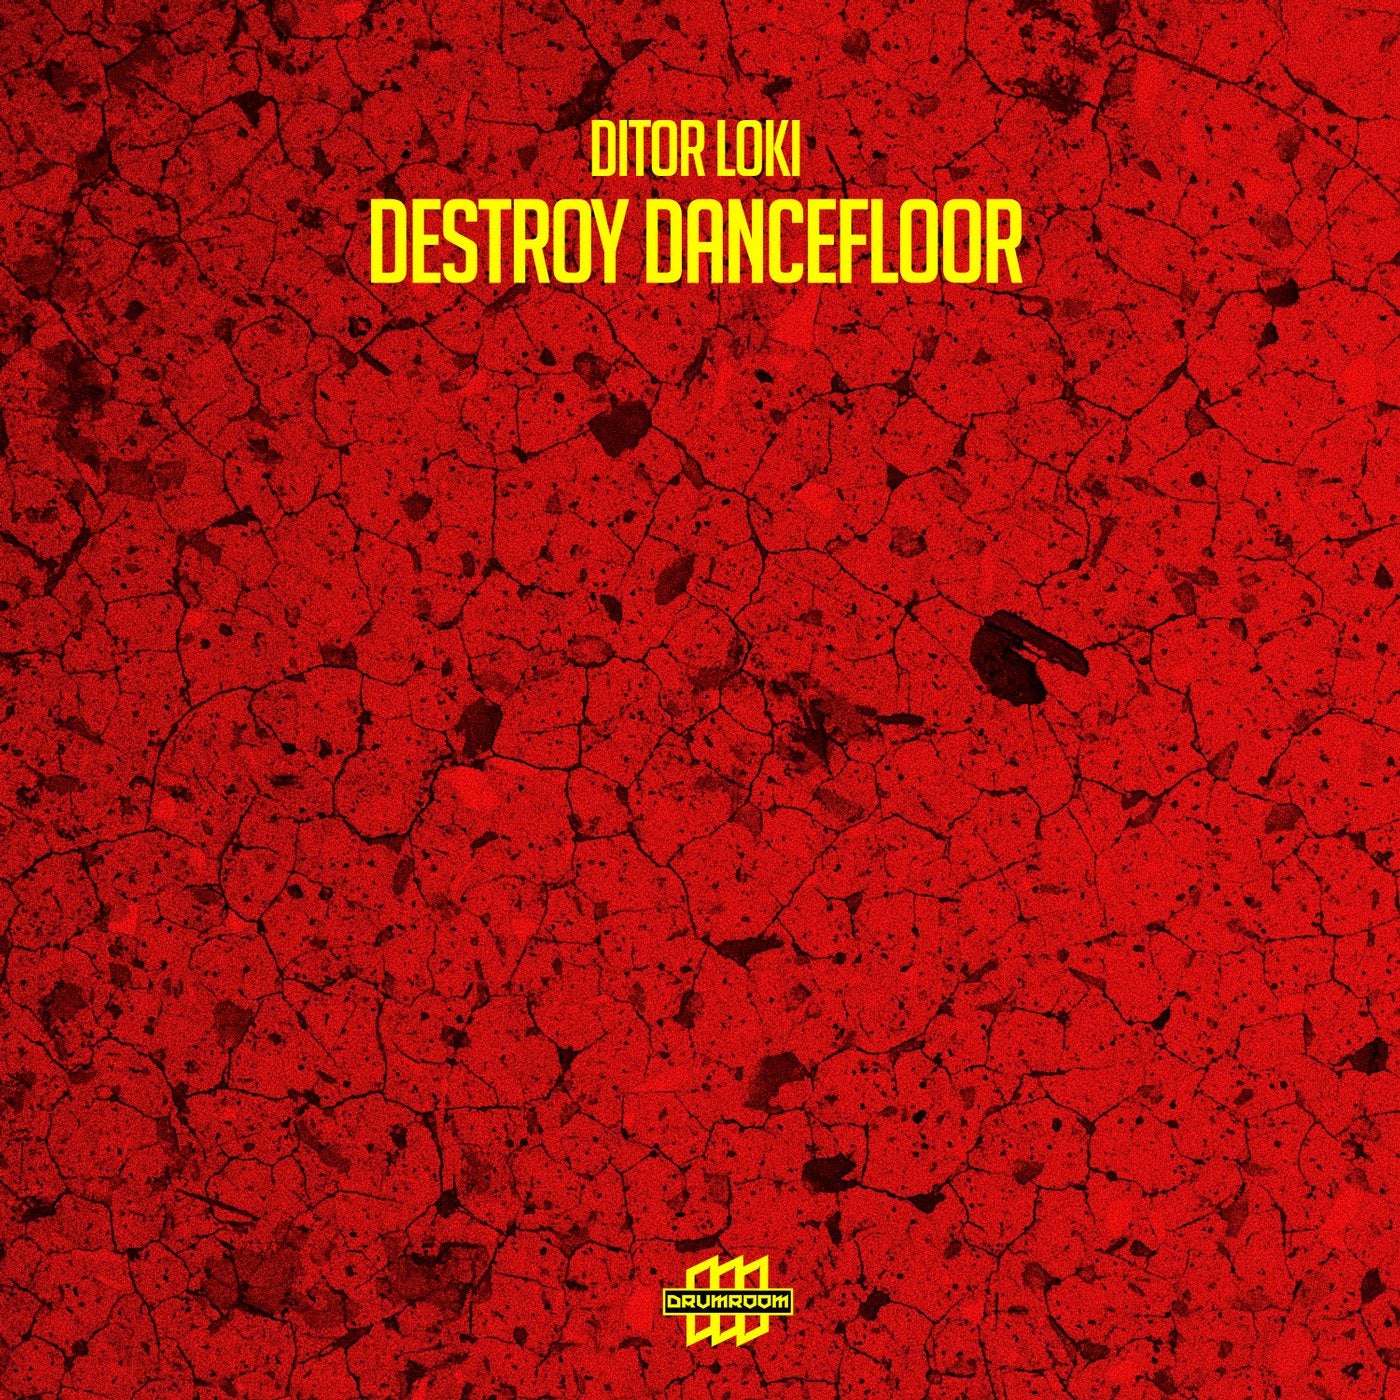 Destroy Dancefloor